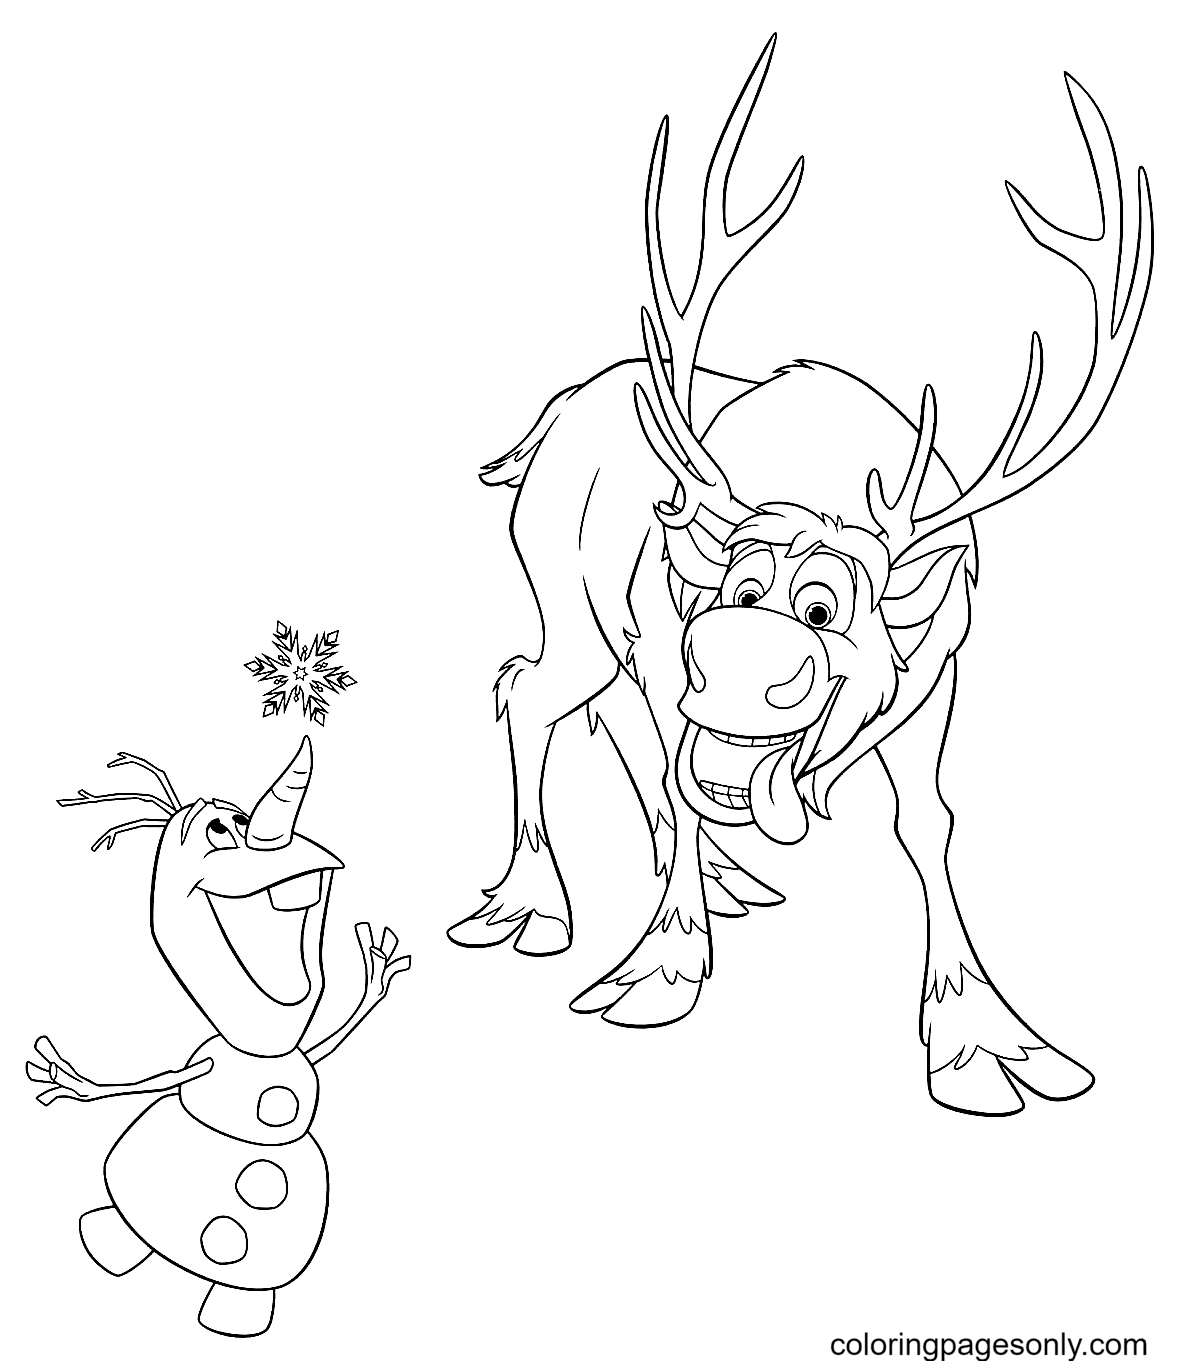 Sven et Olaf attrapent des flocons de neige d'Olaf